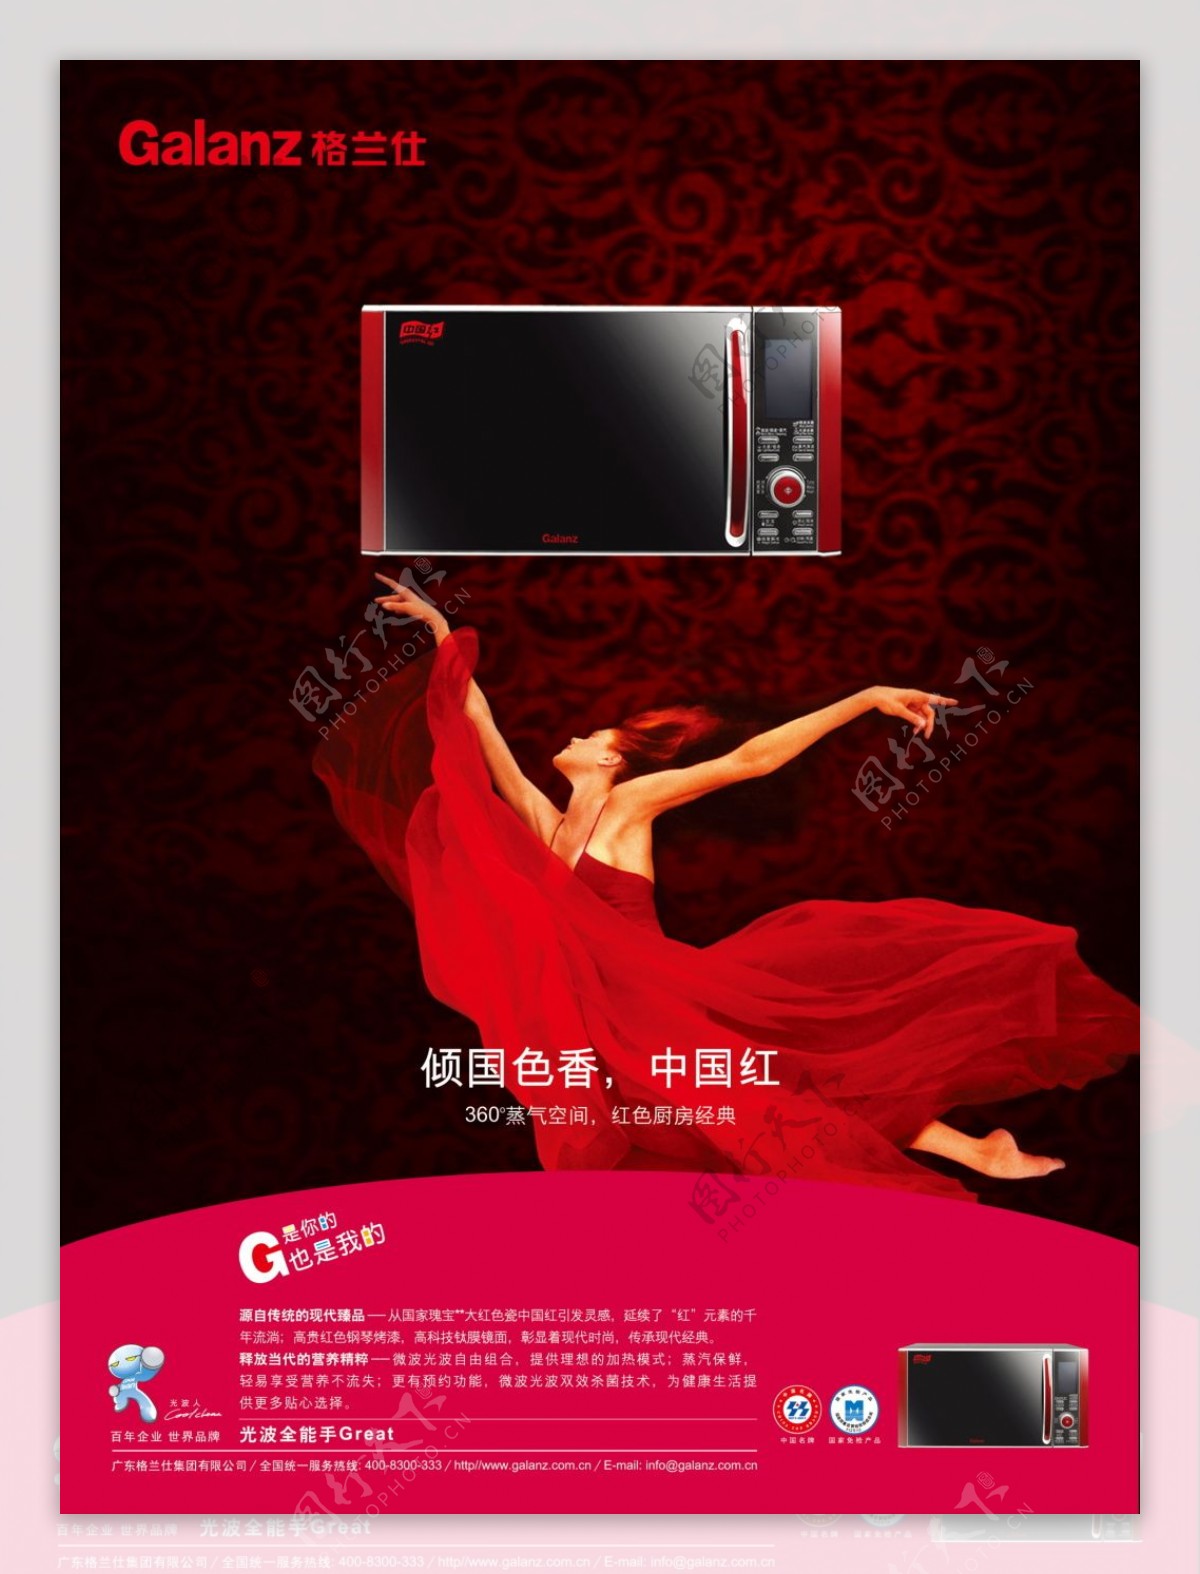 格兰仕红色是风格微波炉生活电器类广告设计海报